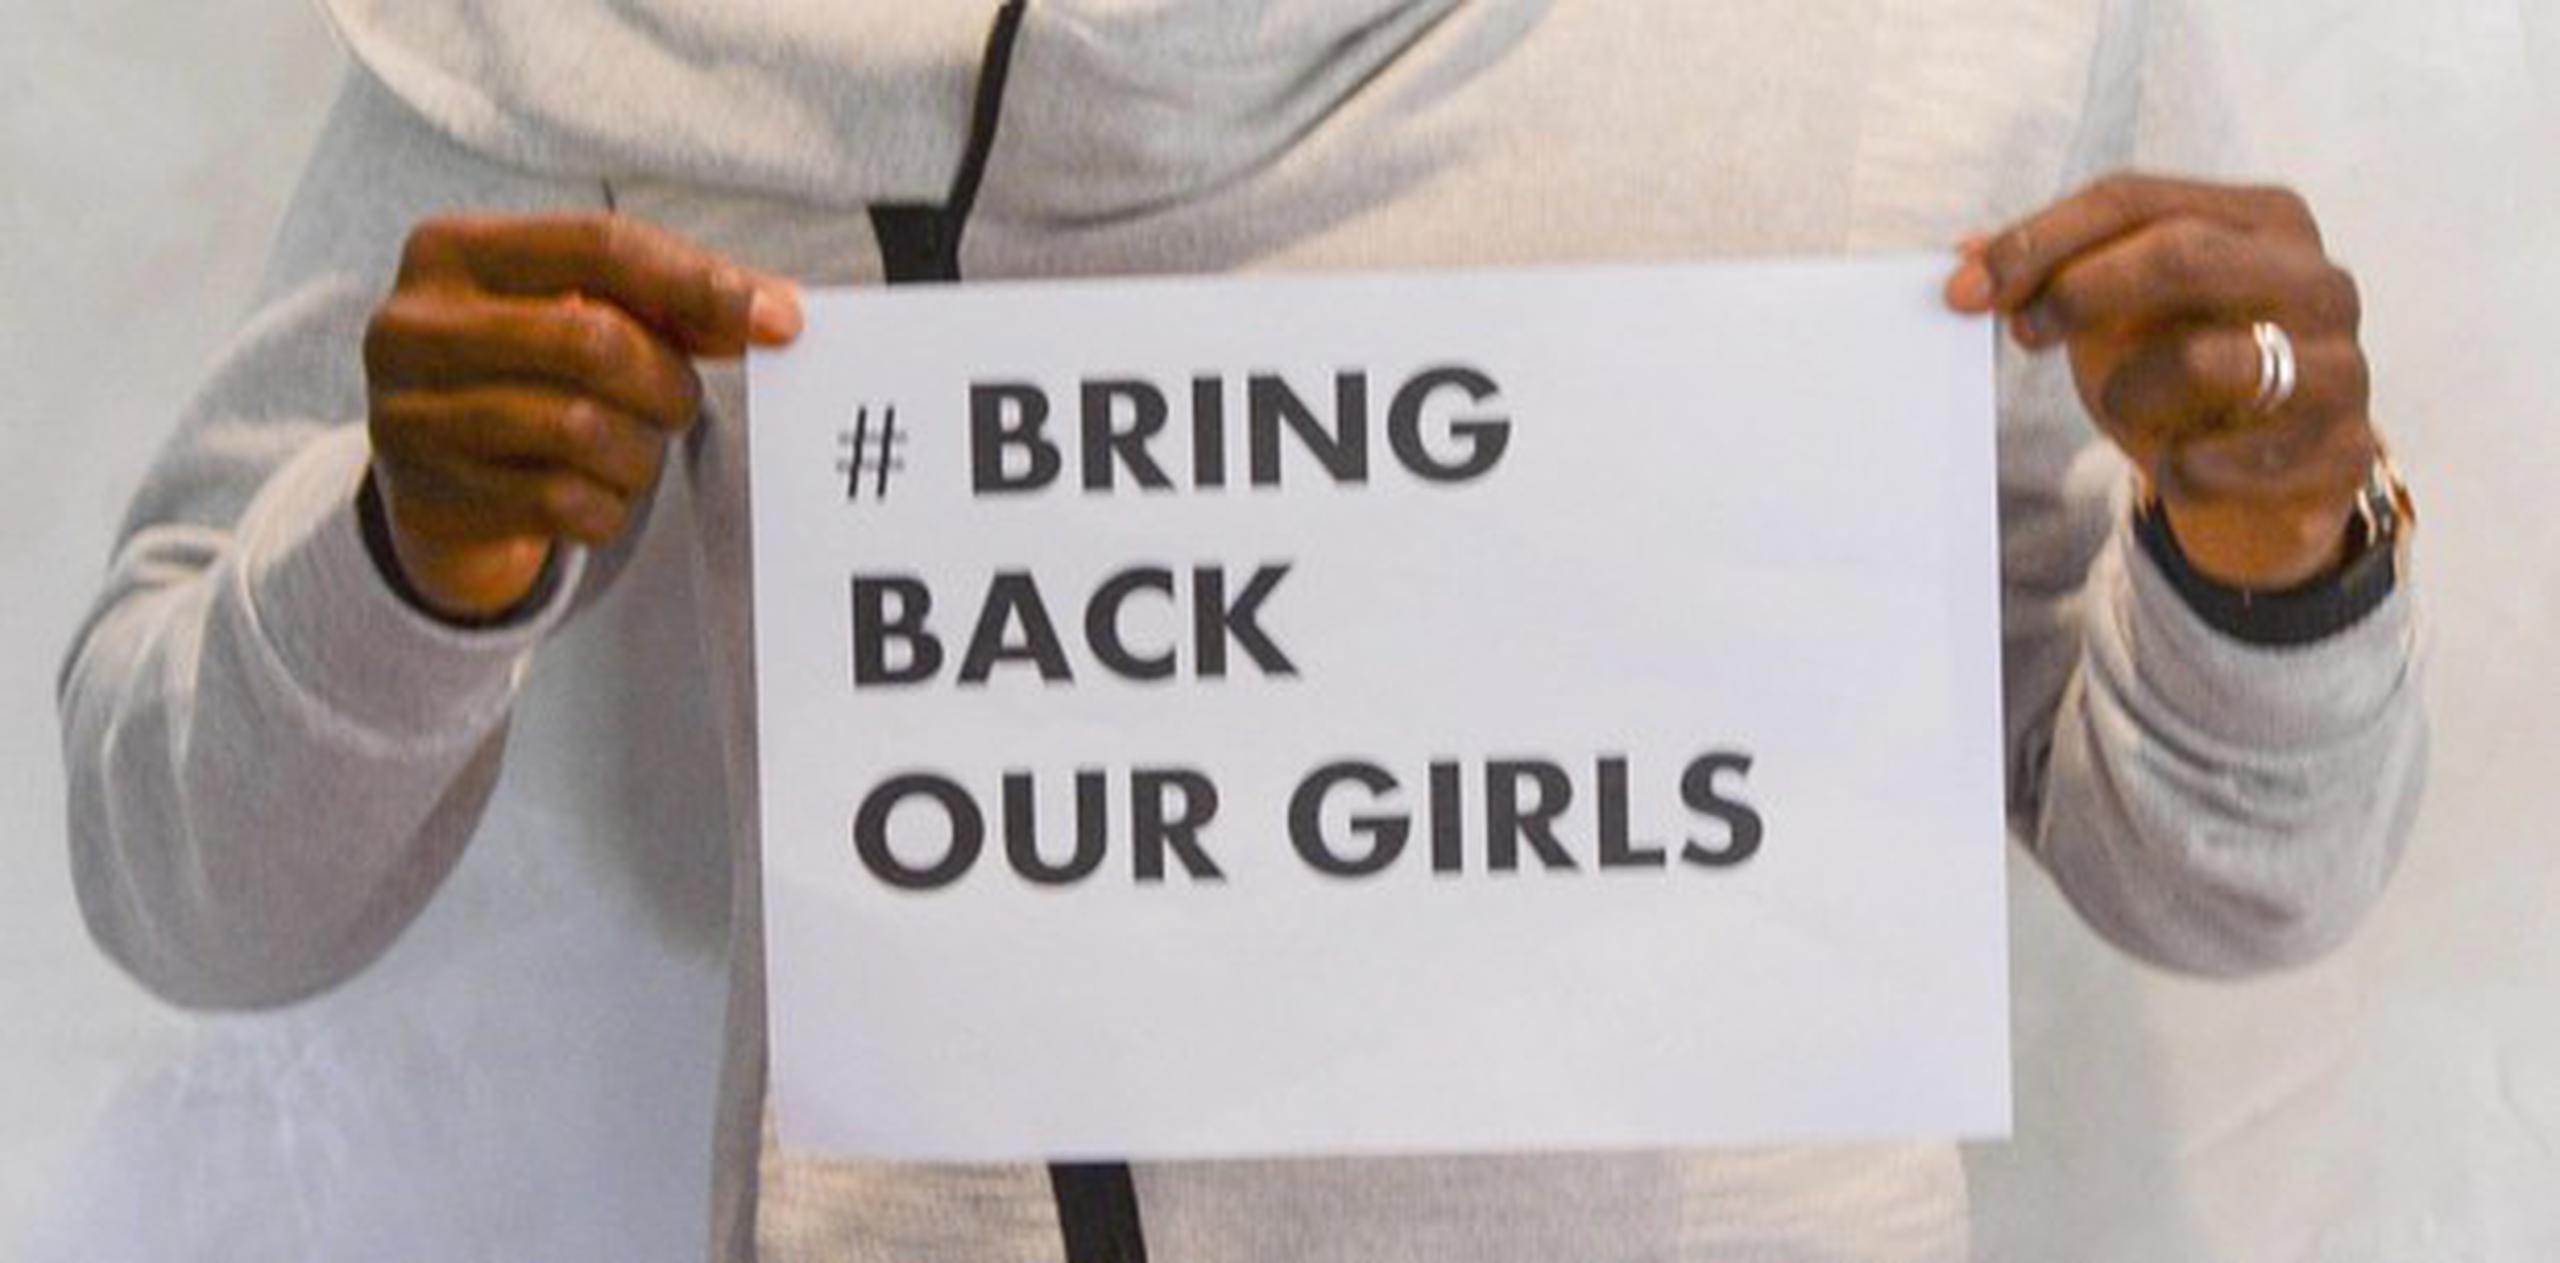 El caso no se difundió tan generalizadamente sino hasta que #BringBackOurGirls y otros hashtags atrajeron la atención.  (EFE)